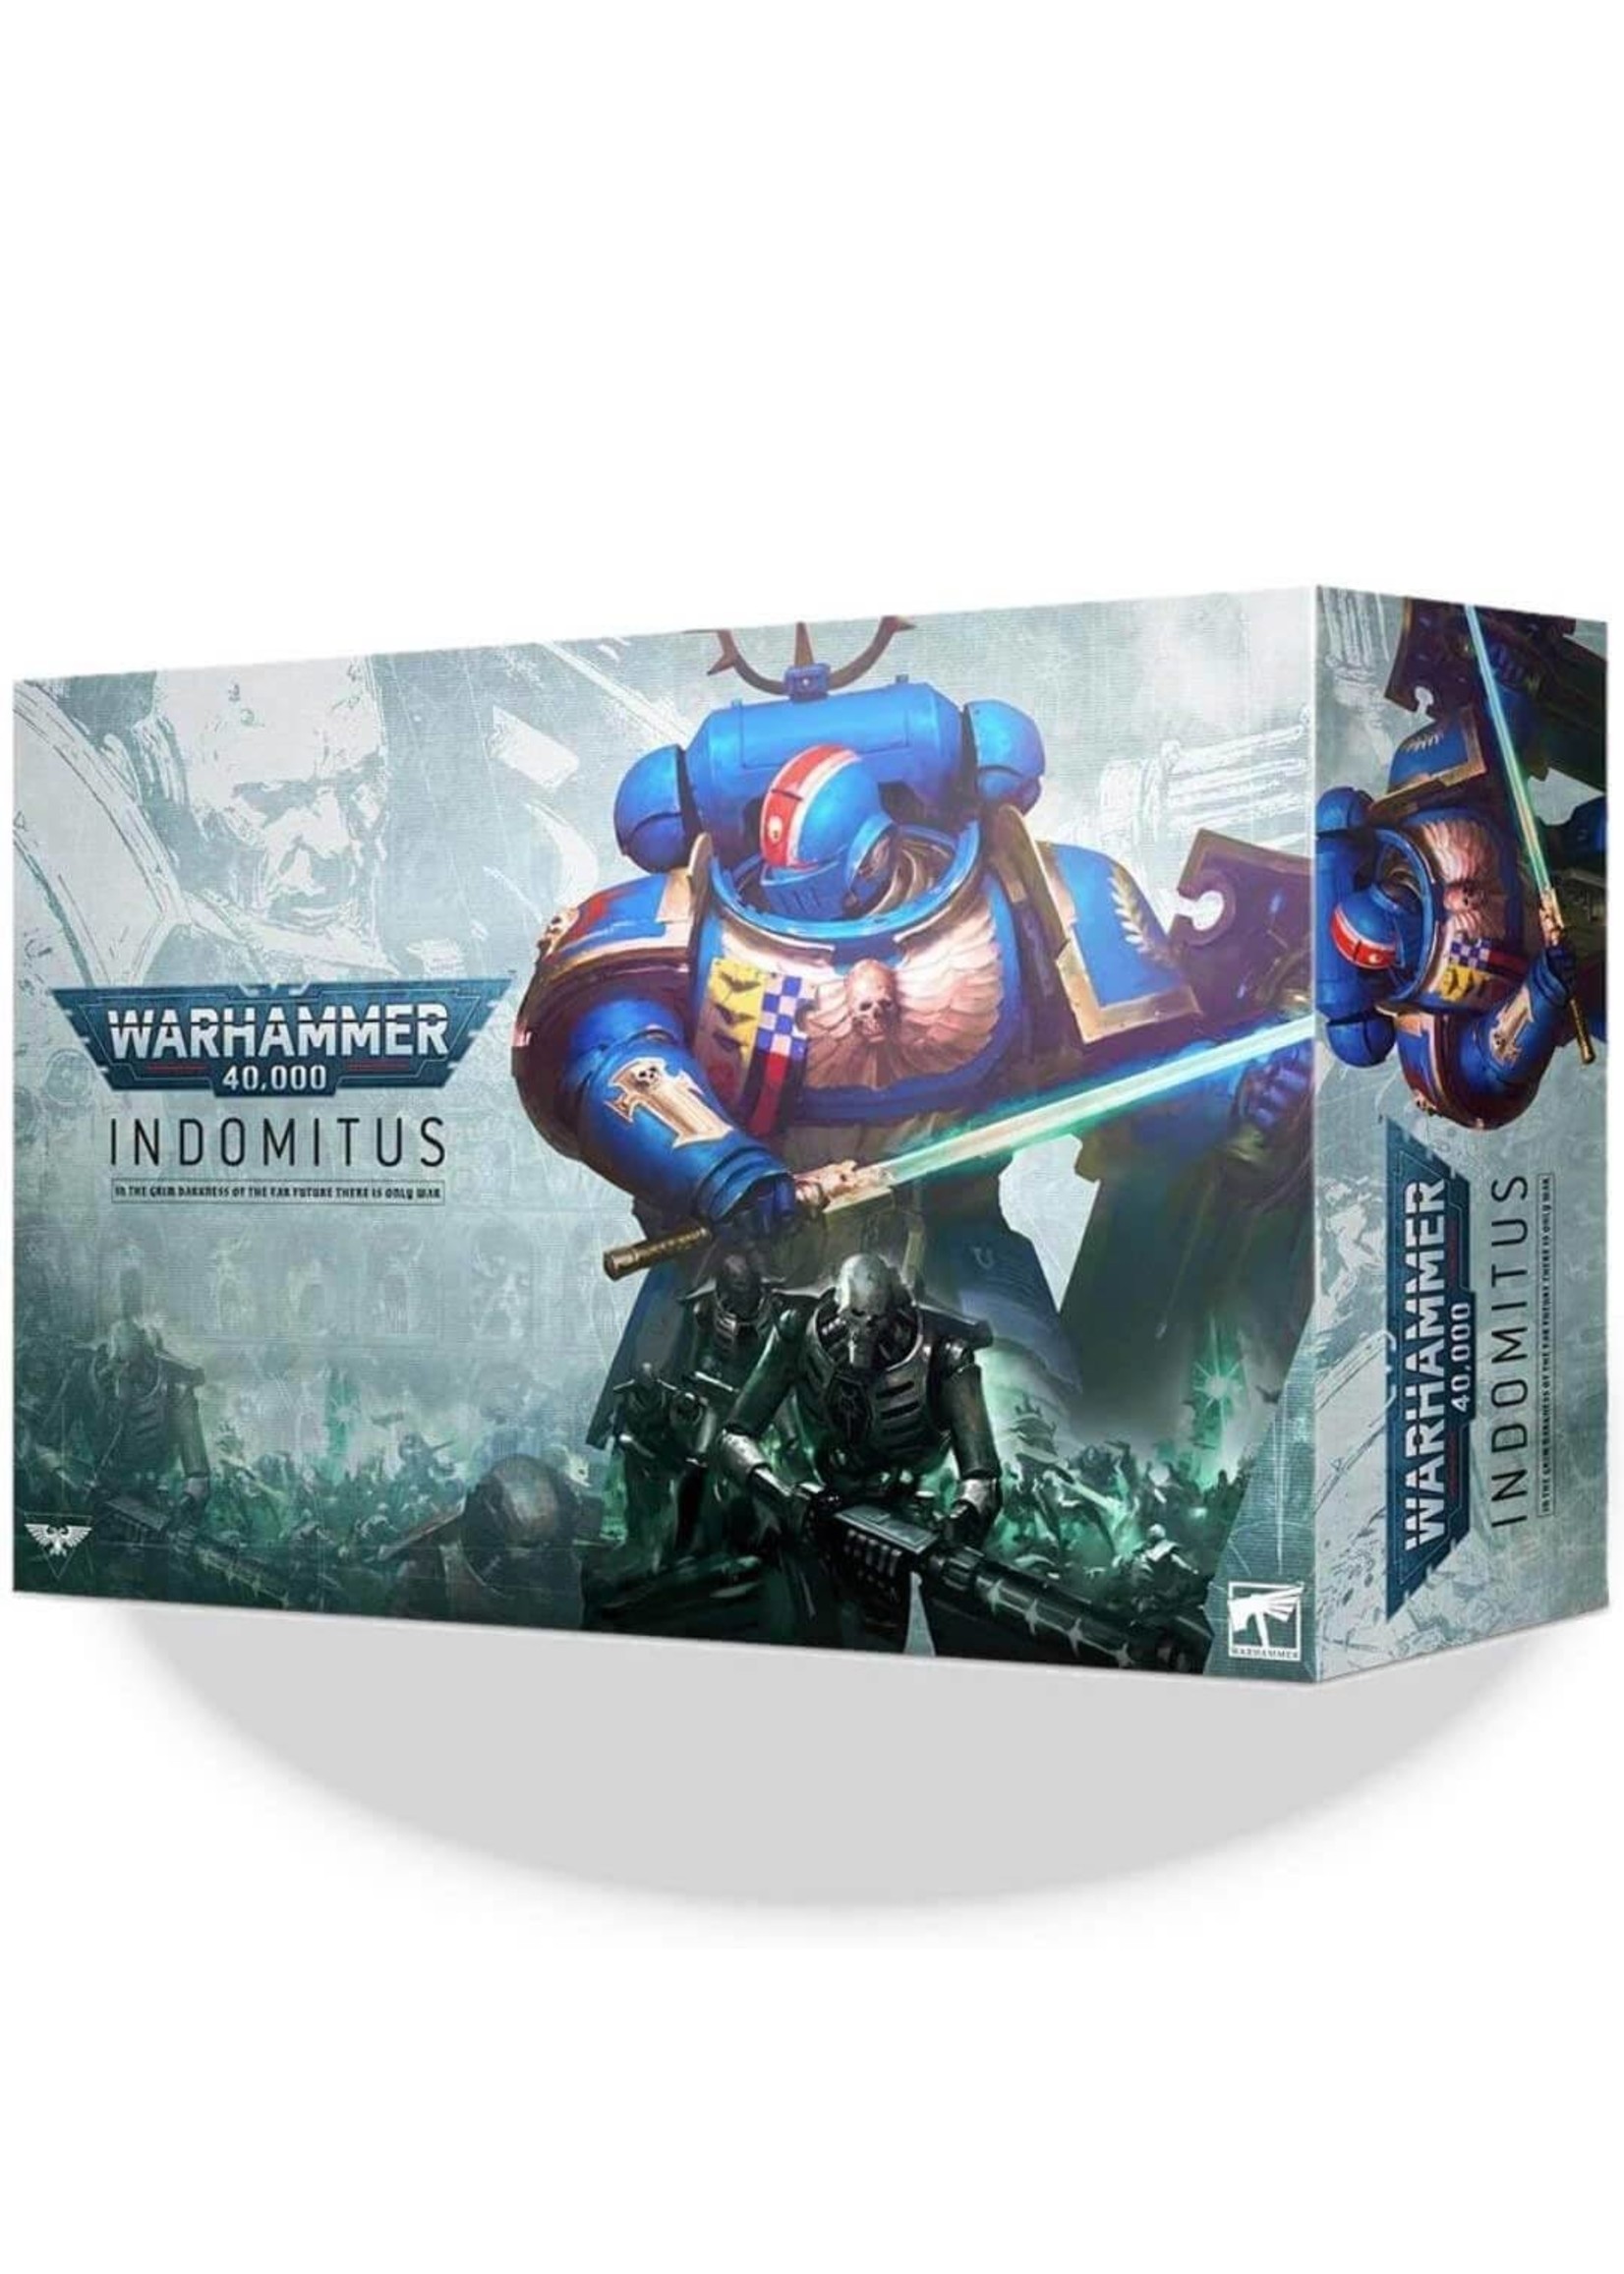 Warhammer 40K: Indomitus Box Set